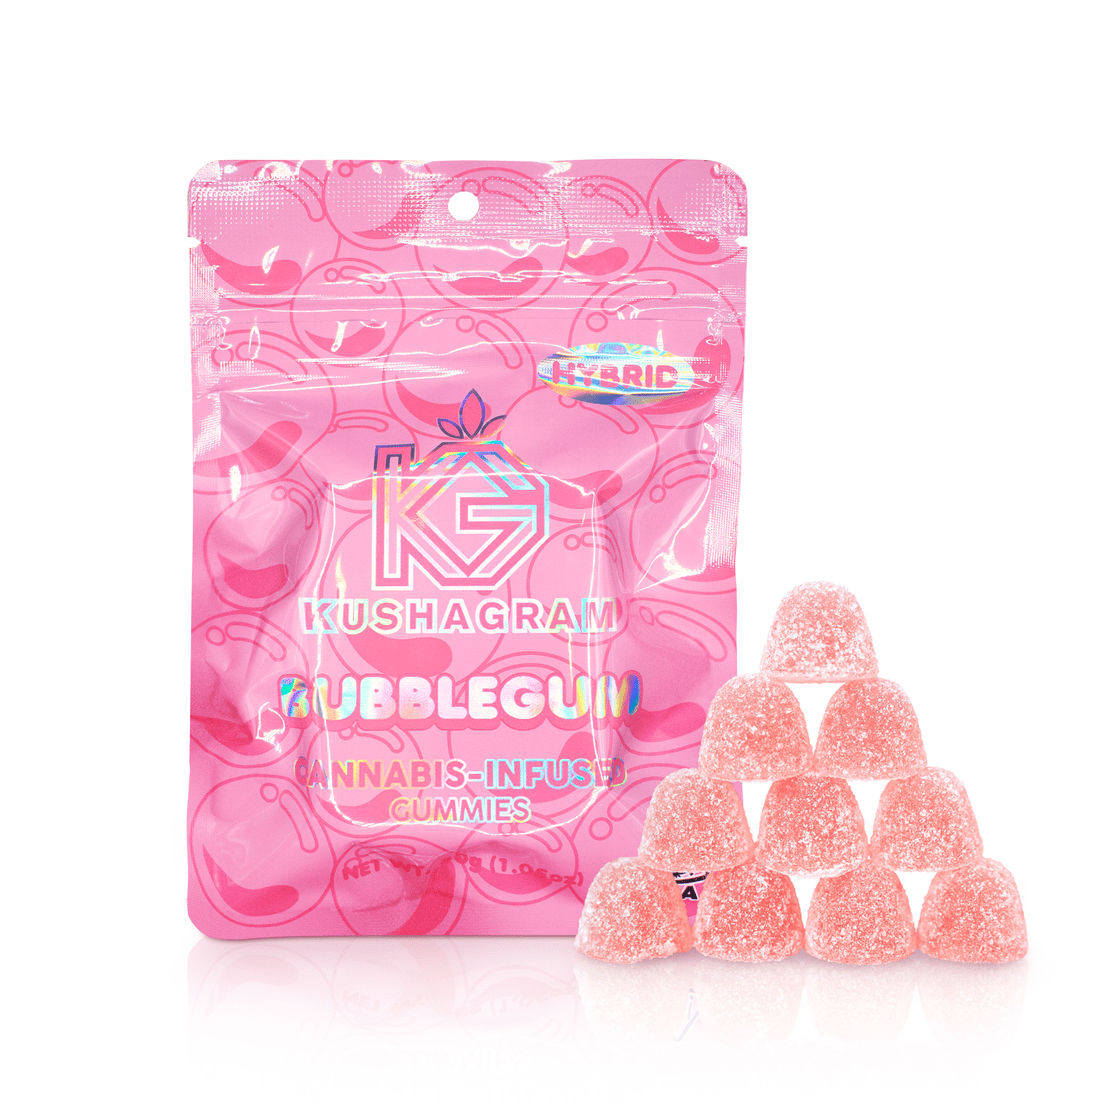 100mg Bubblegum Gummies